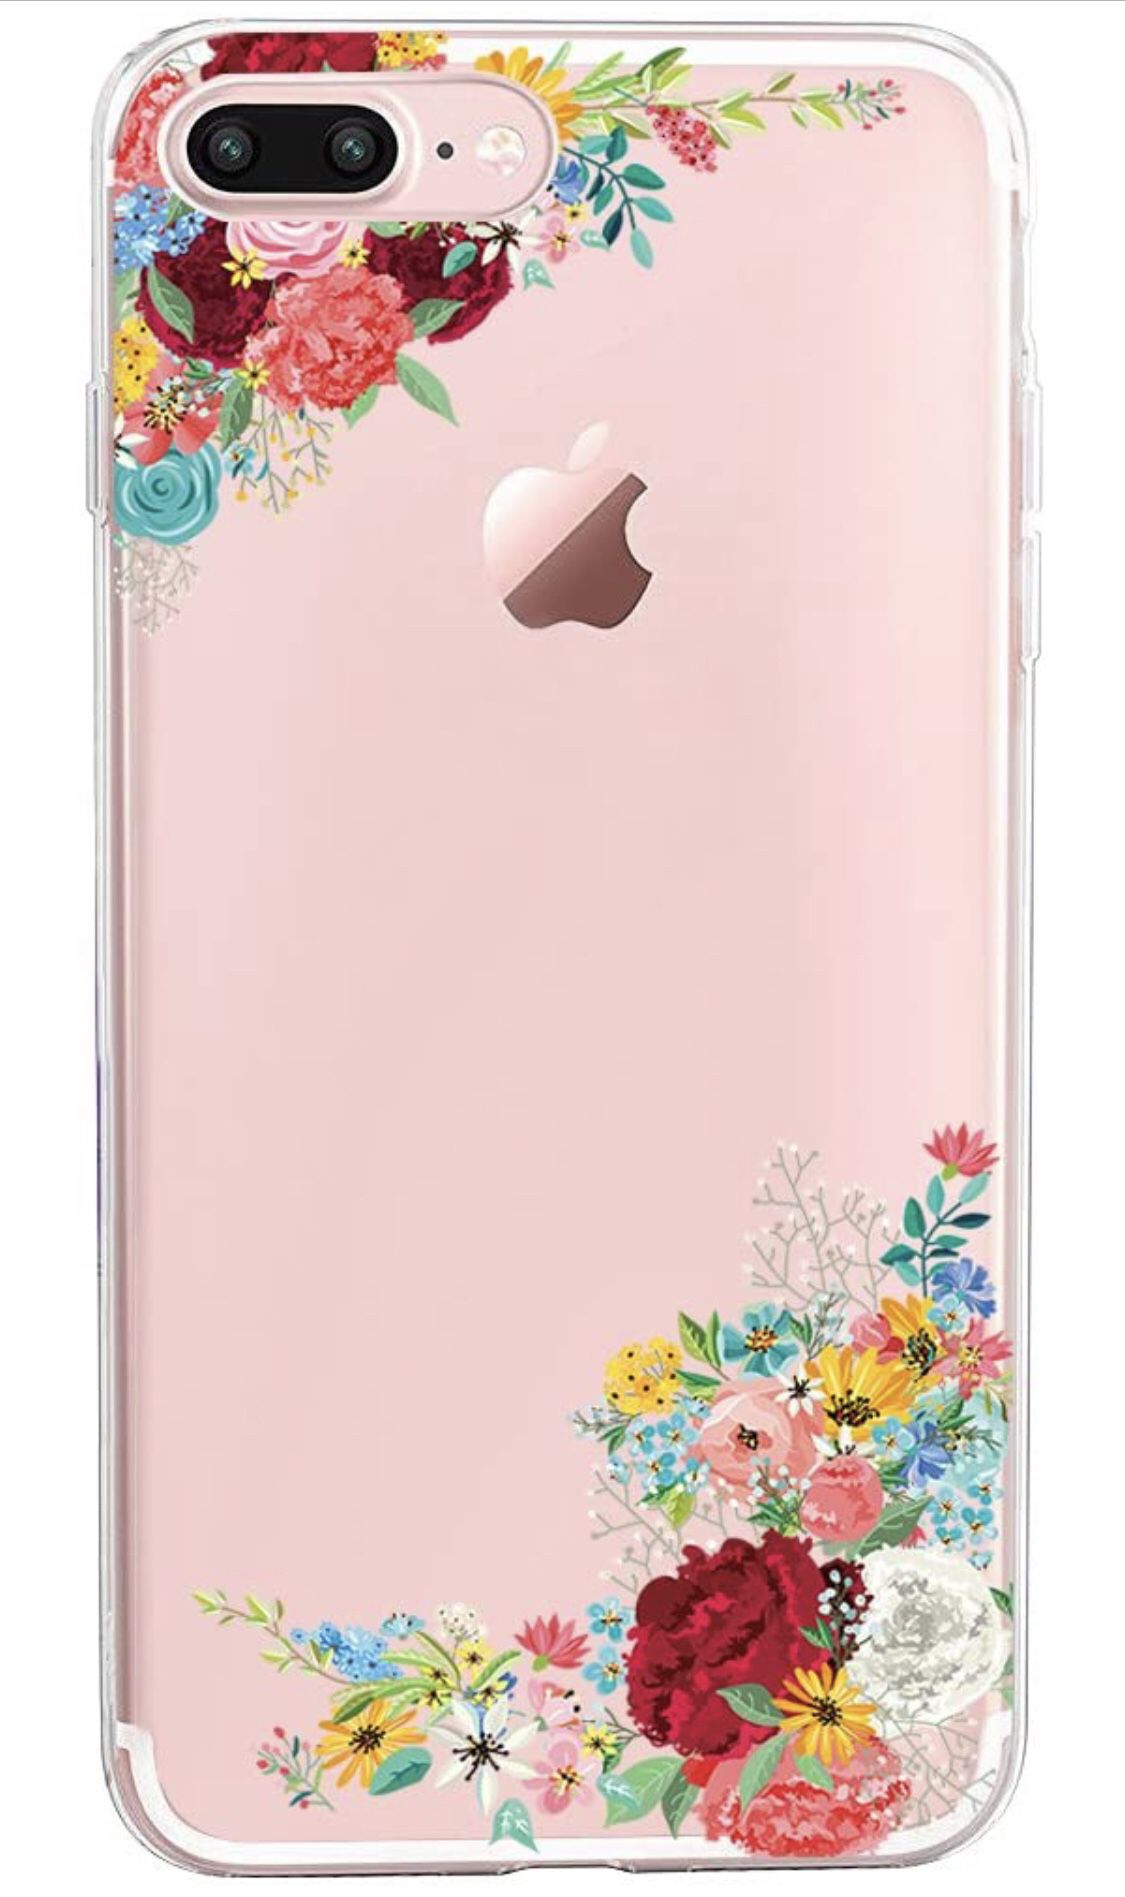 iPhone 7 Plus 5.5 inch Case iPhone 8 Plus TPU case, Soft Silicone TPU Phone case